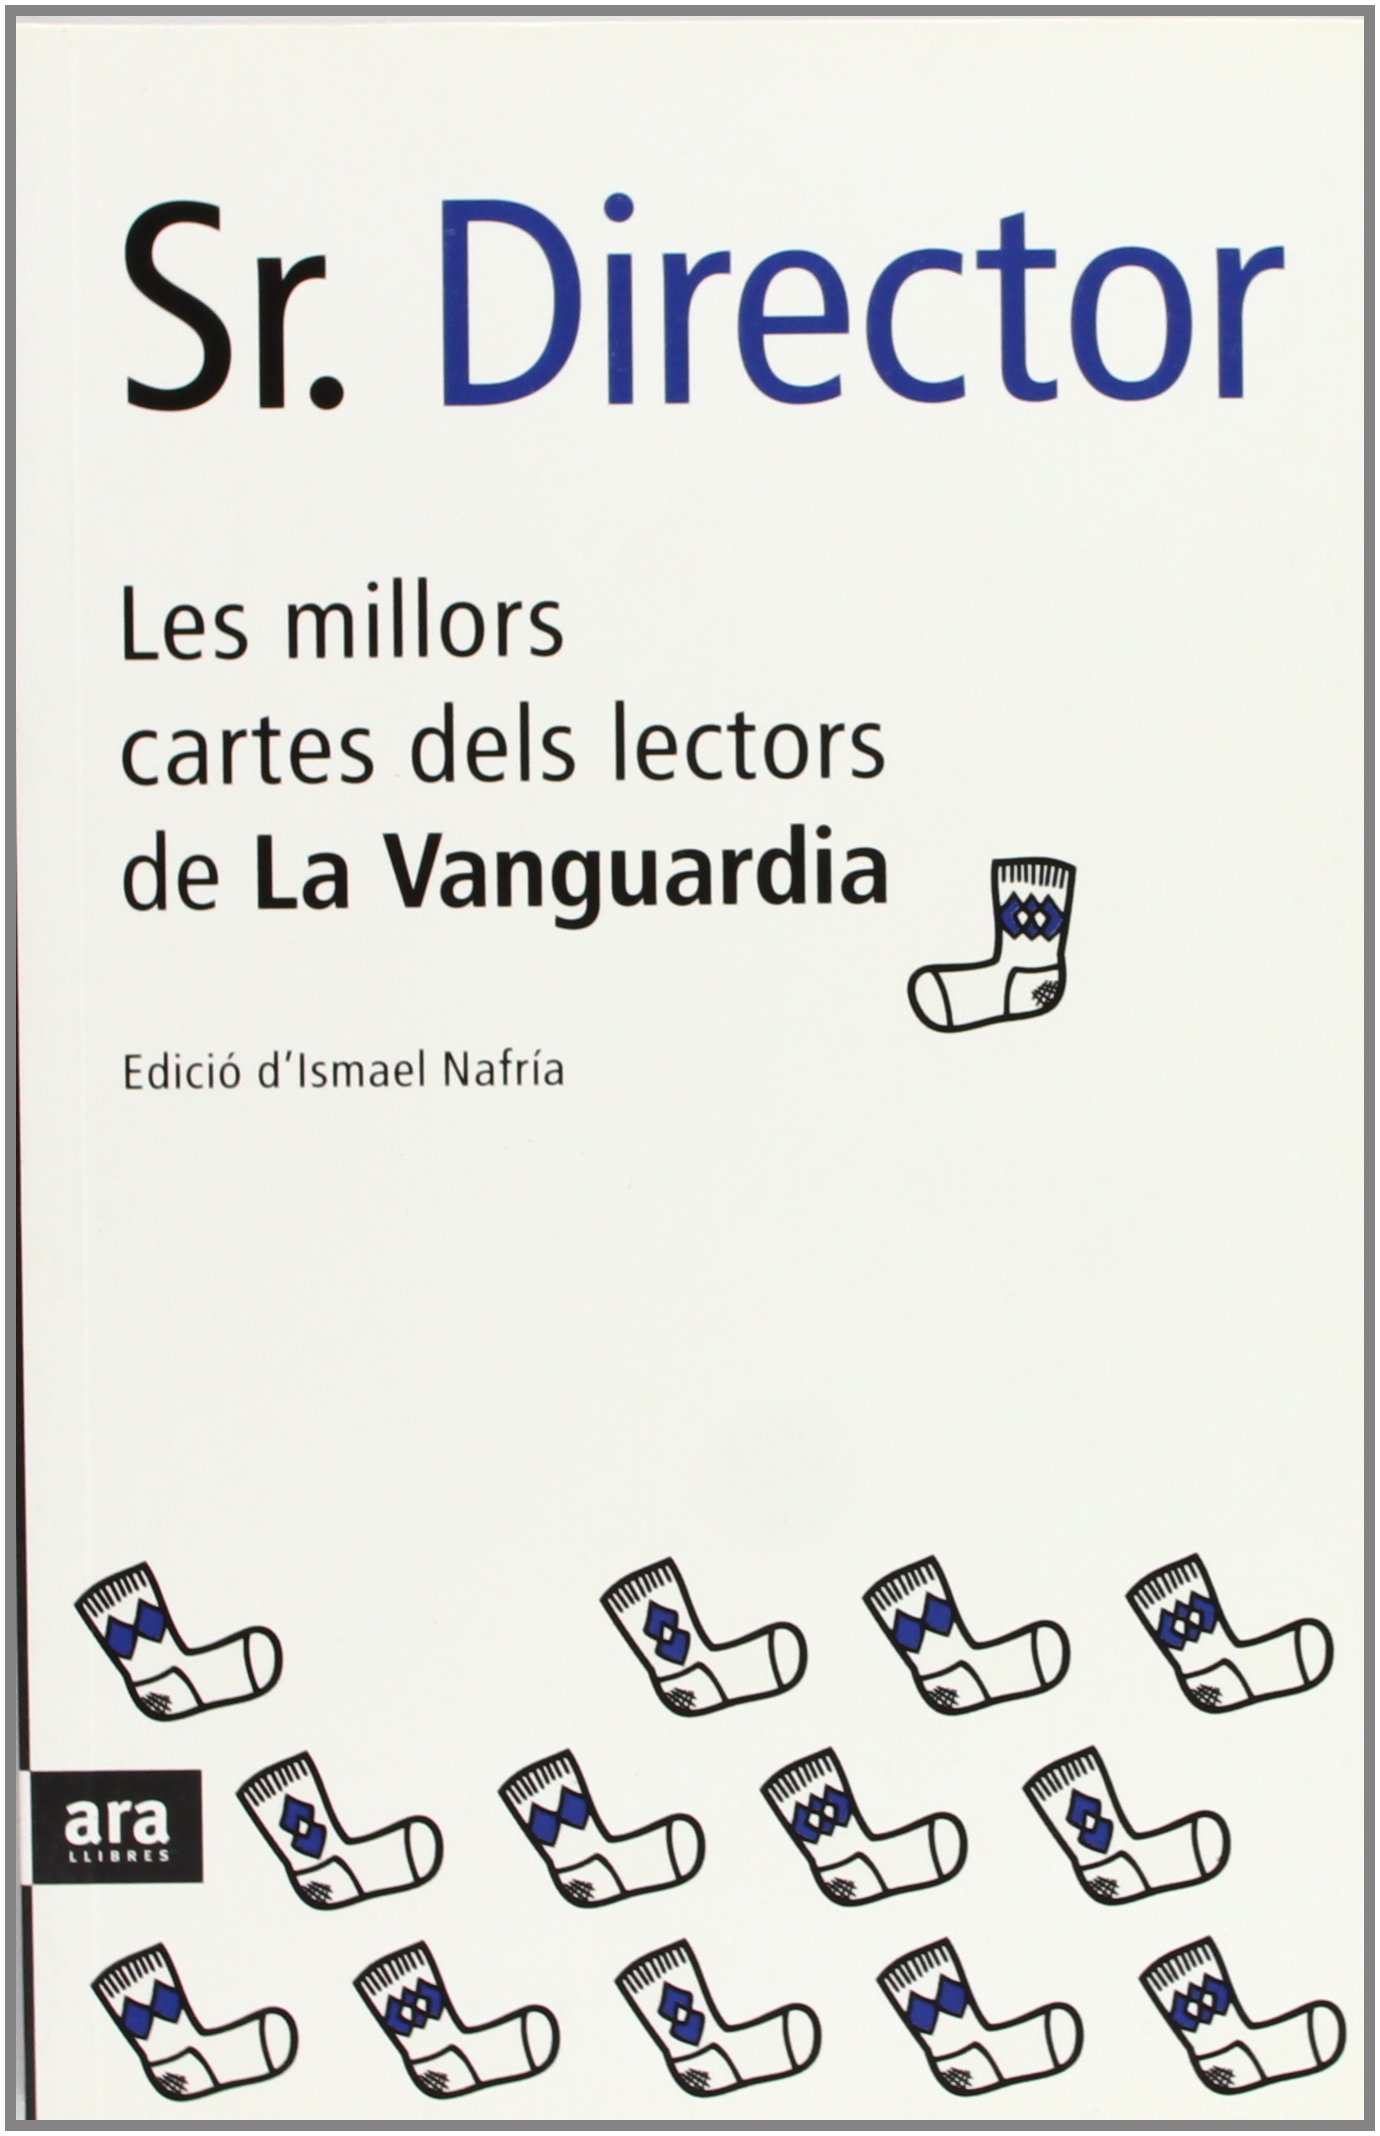 Portada del libro "Sr. Director. Les millors cartes dels lectors de La Vanguardia" de Ismael Nafría